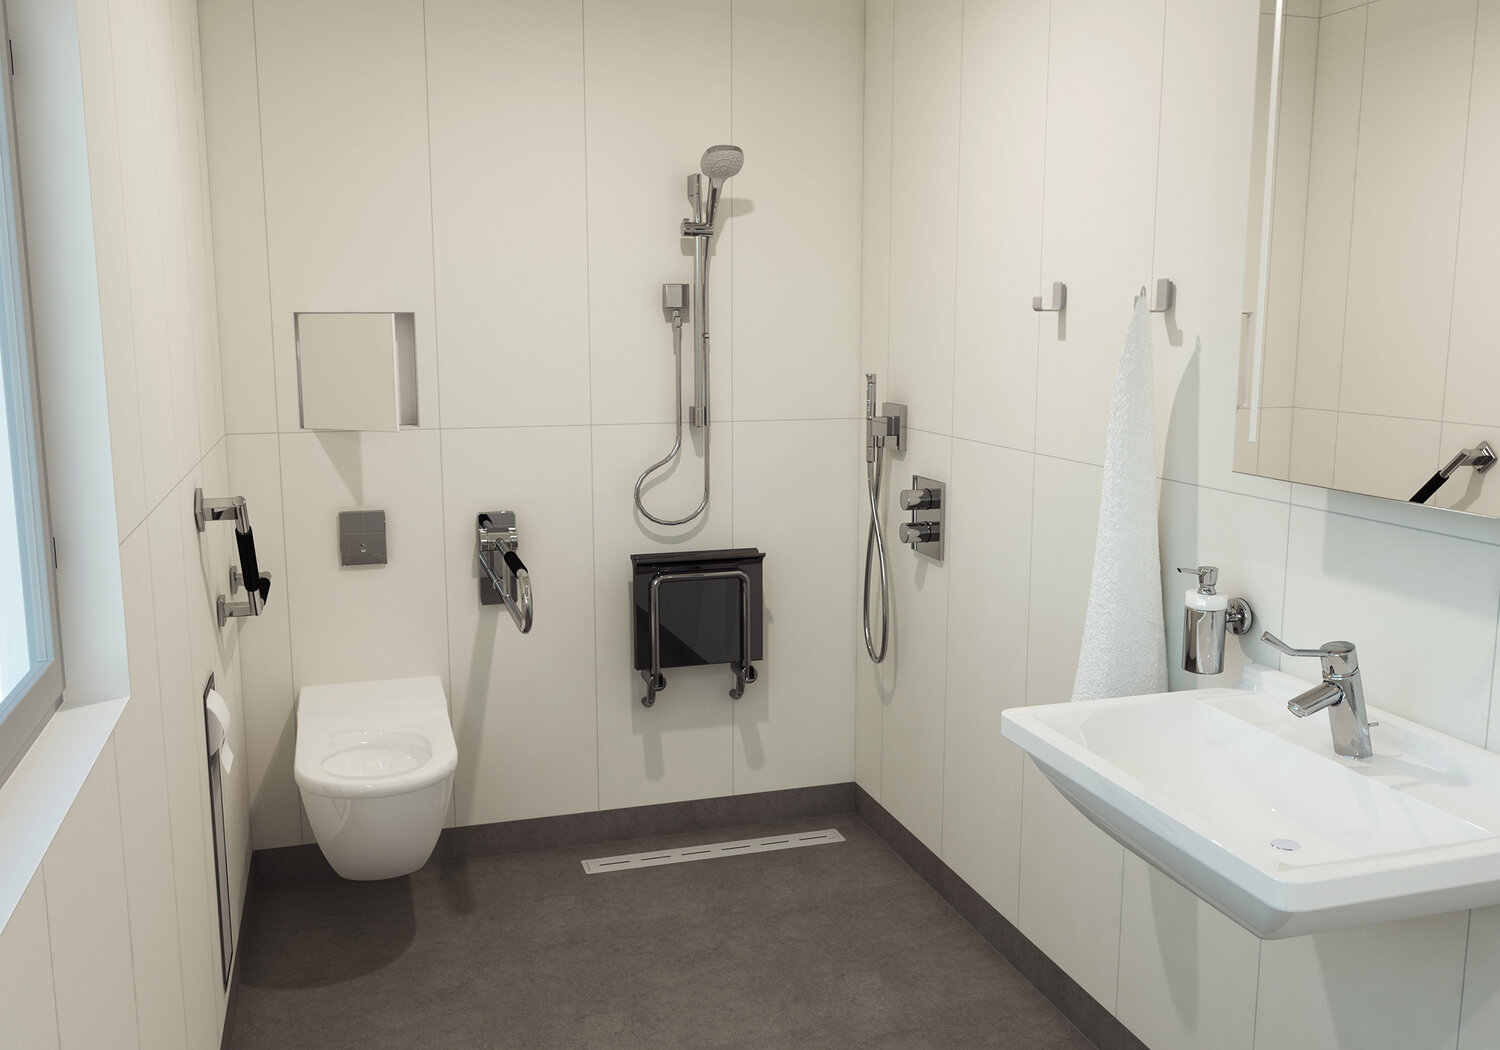 Modern open-concept bathroom redesign.